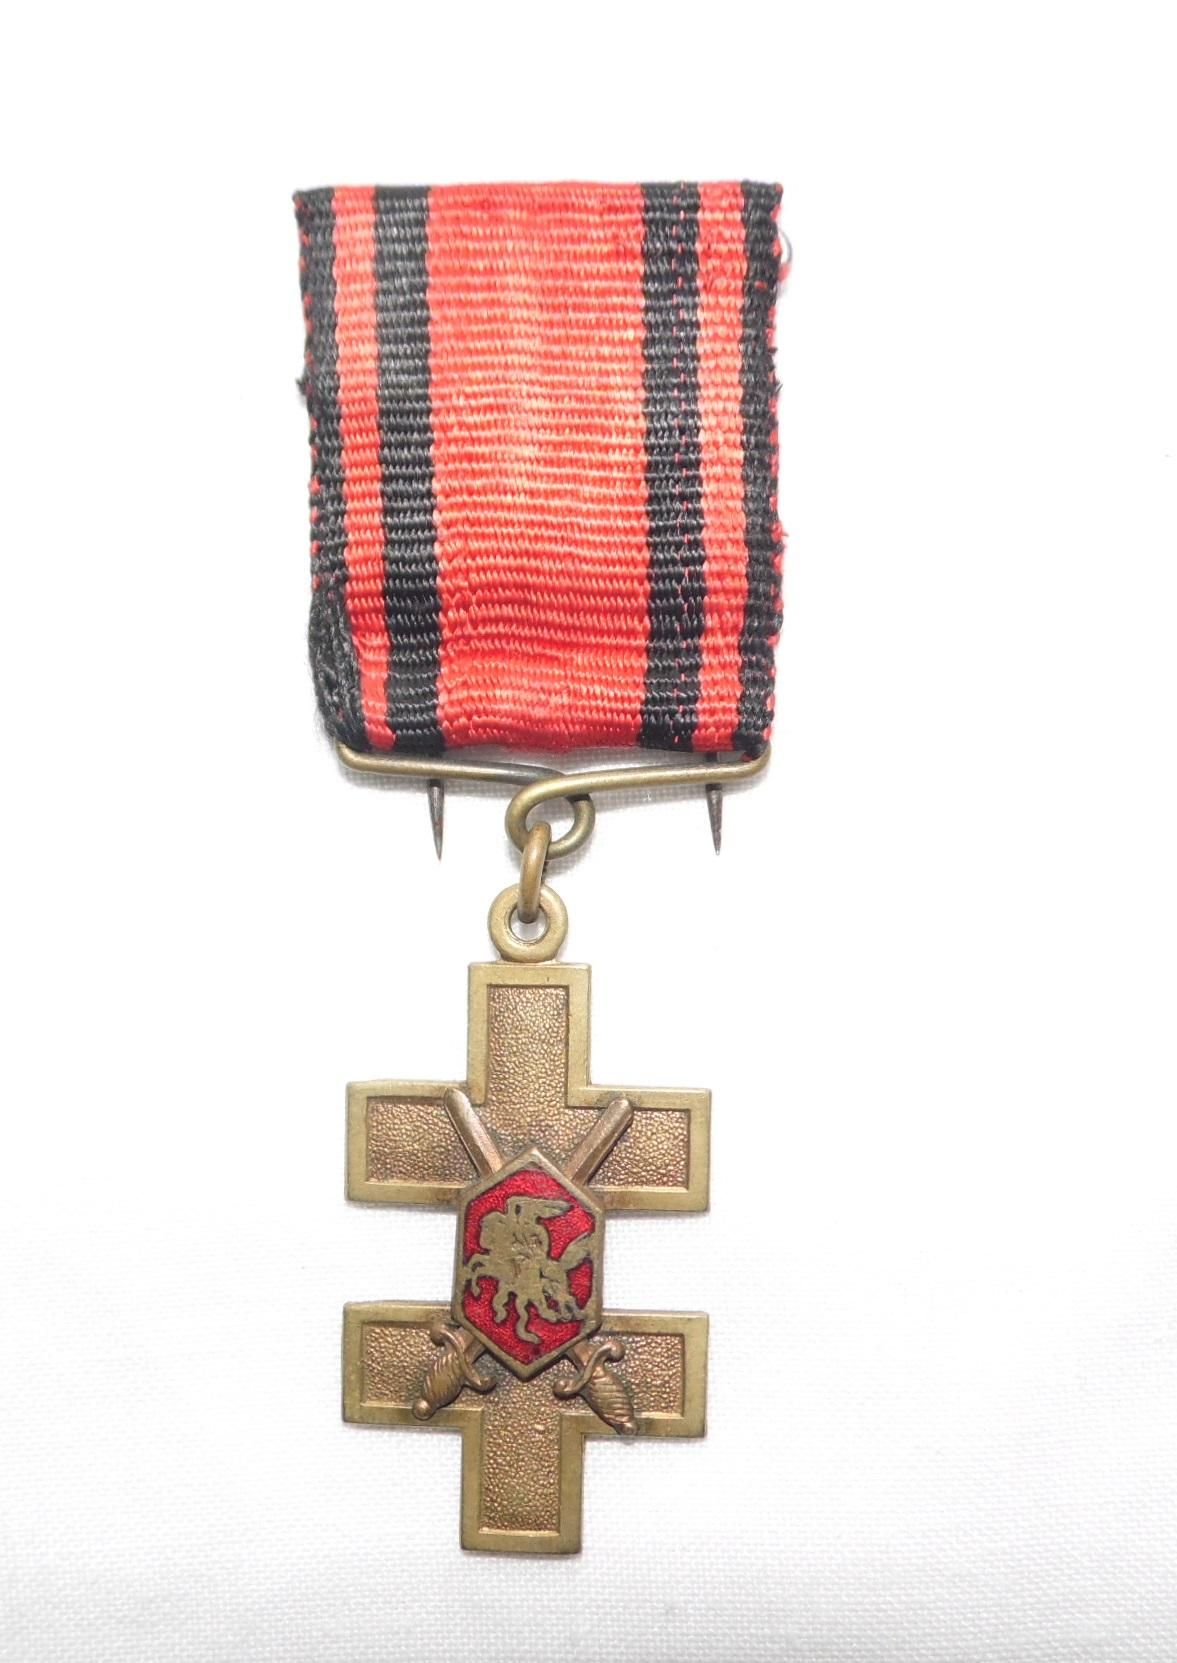 Крест Витиса "За храбрость" 1920 года 1 класса, Из коллекции Г. Сакалаускаса